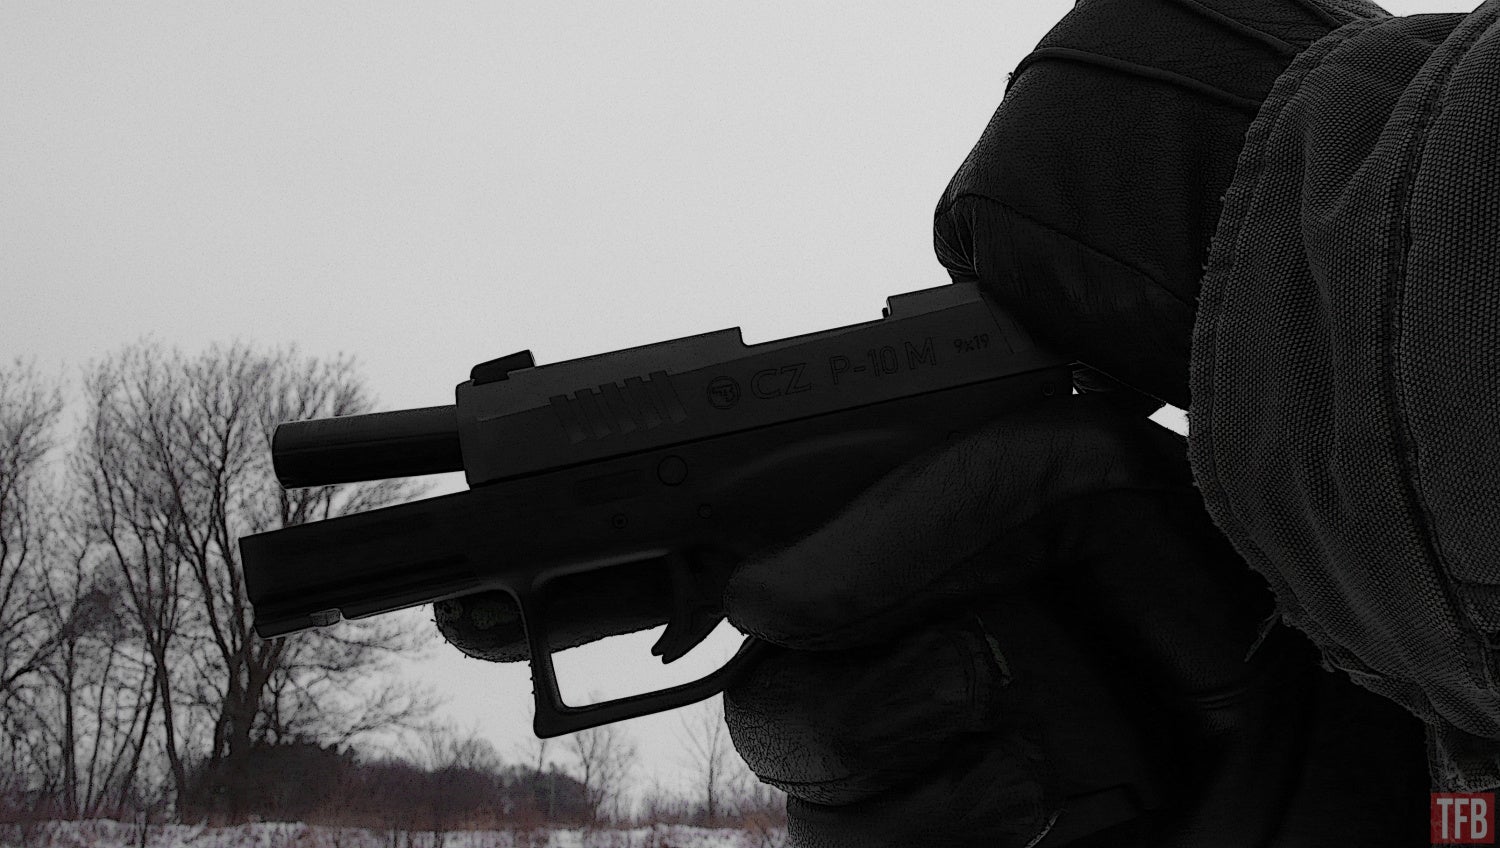 CZ P10 M pistol review